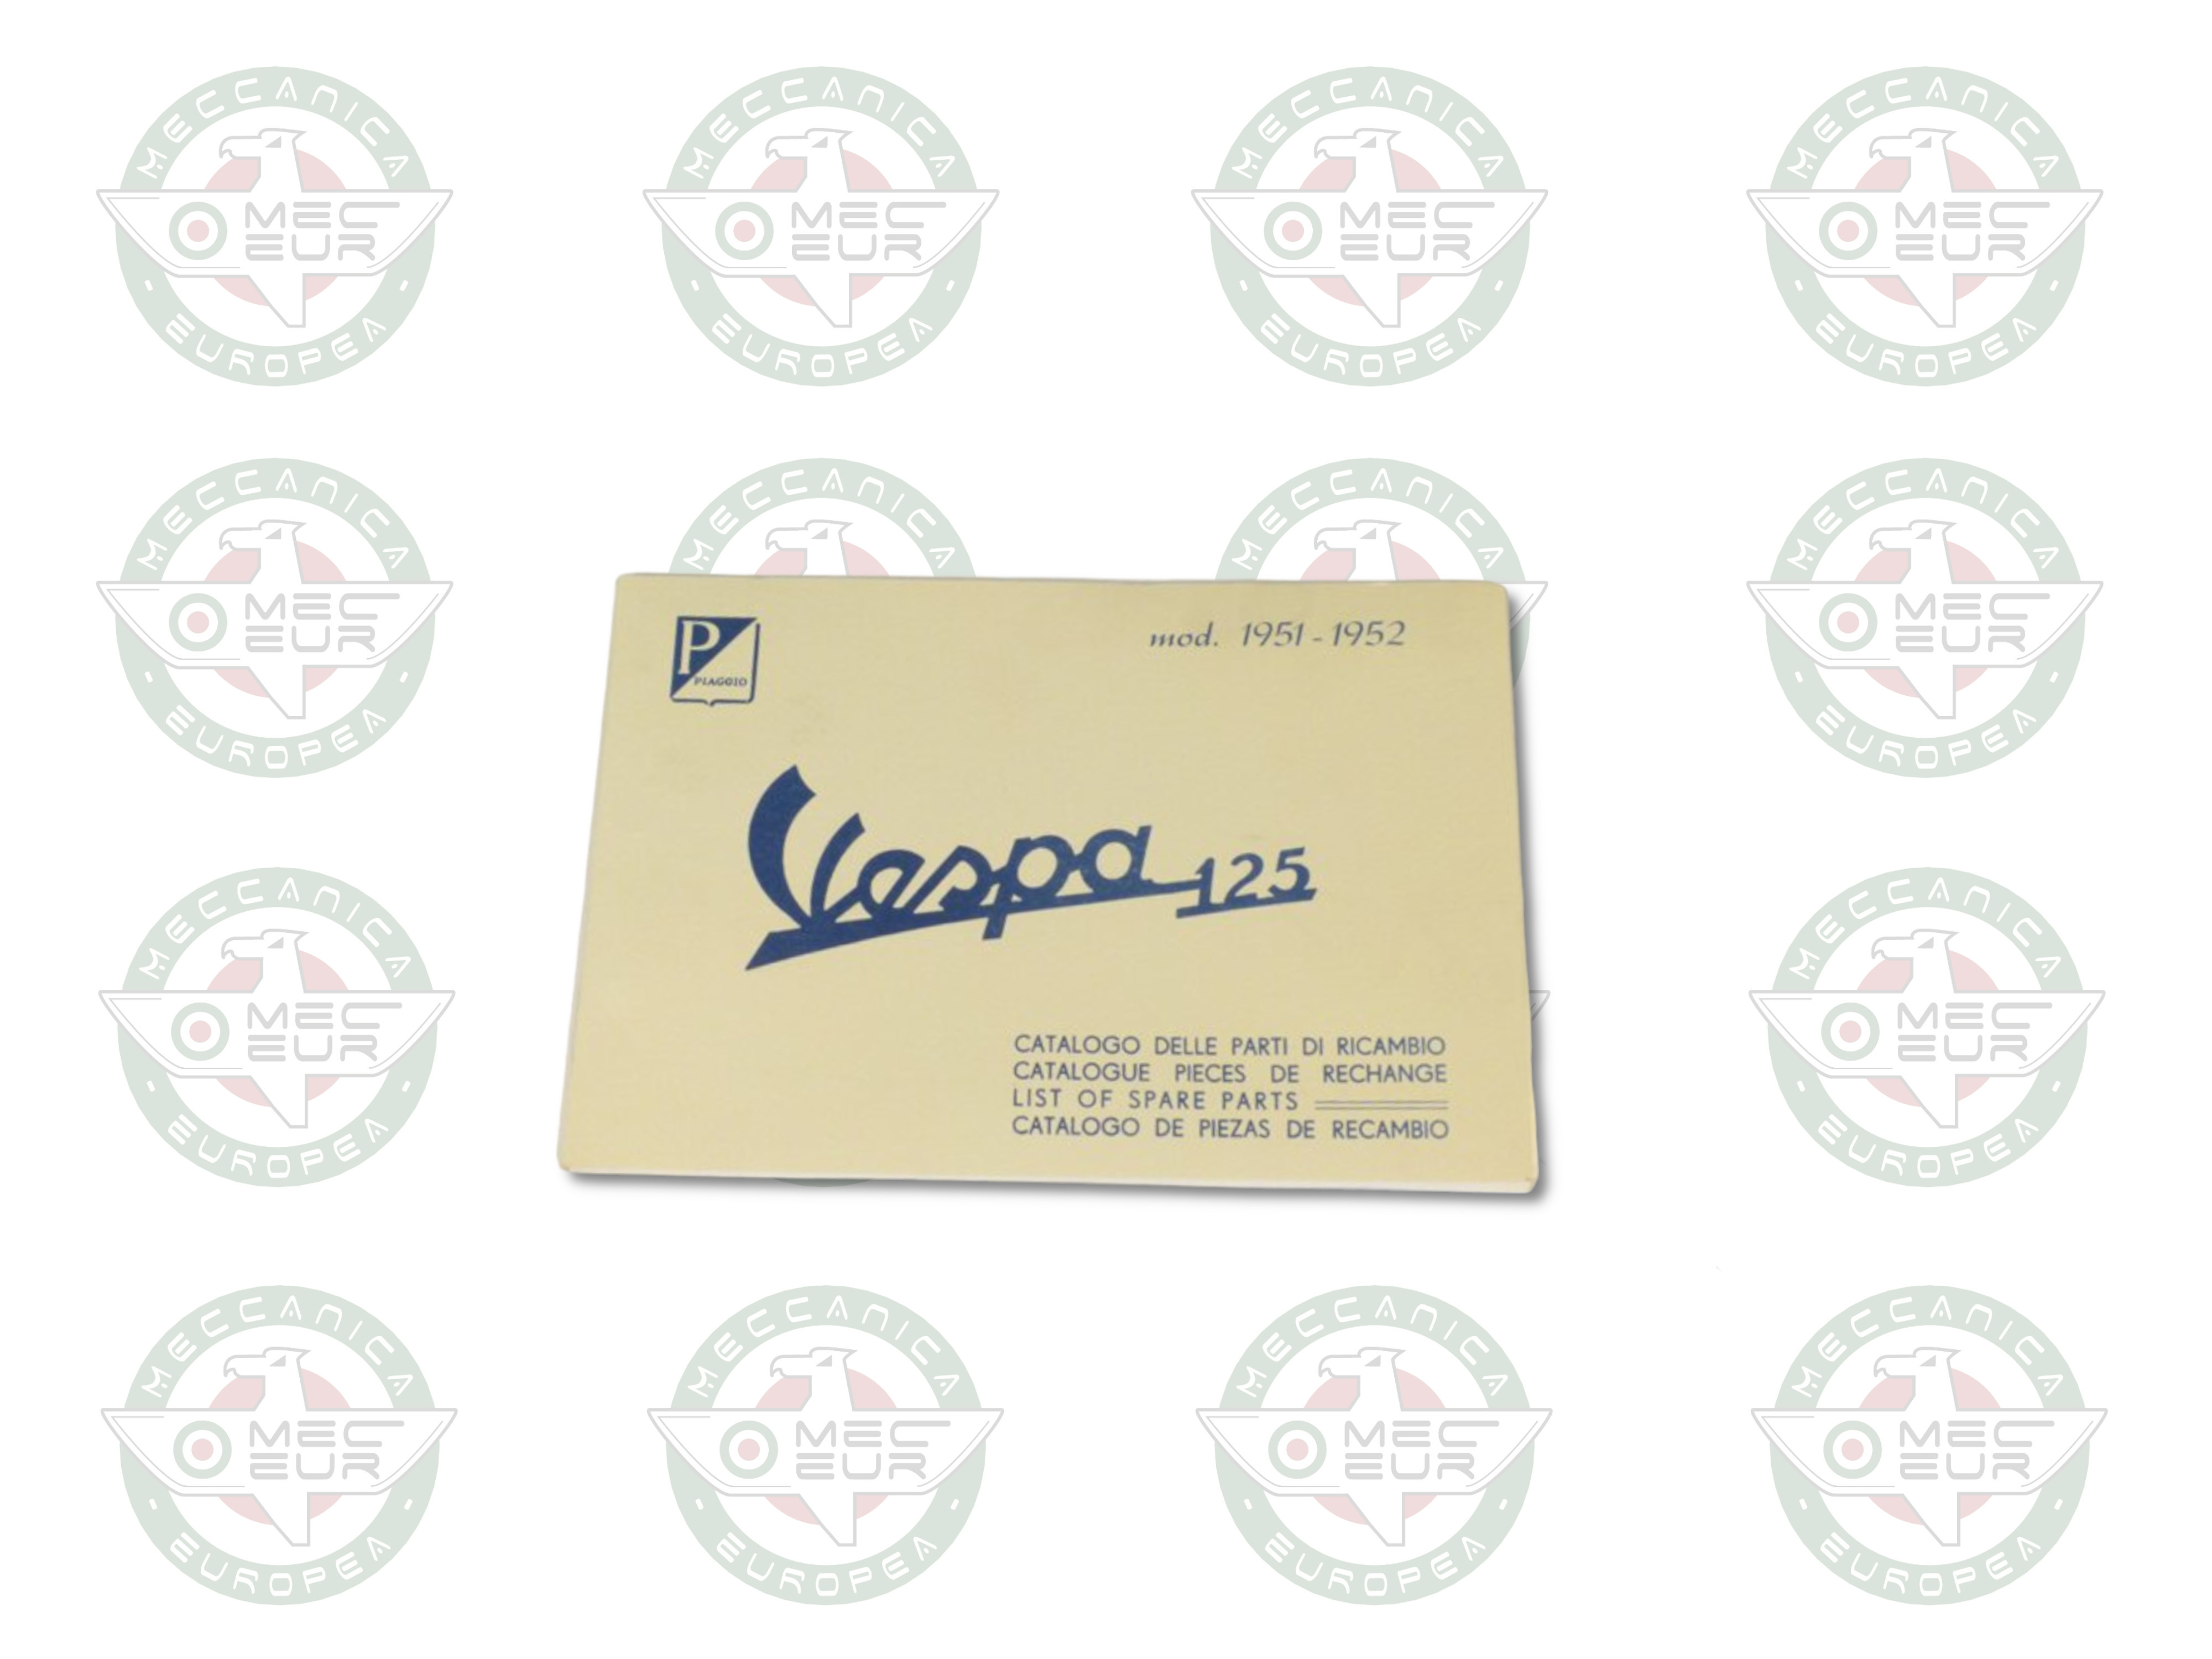 Manuale parti di ricambio per Vespa 125 1951/52